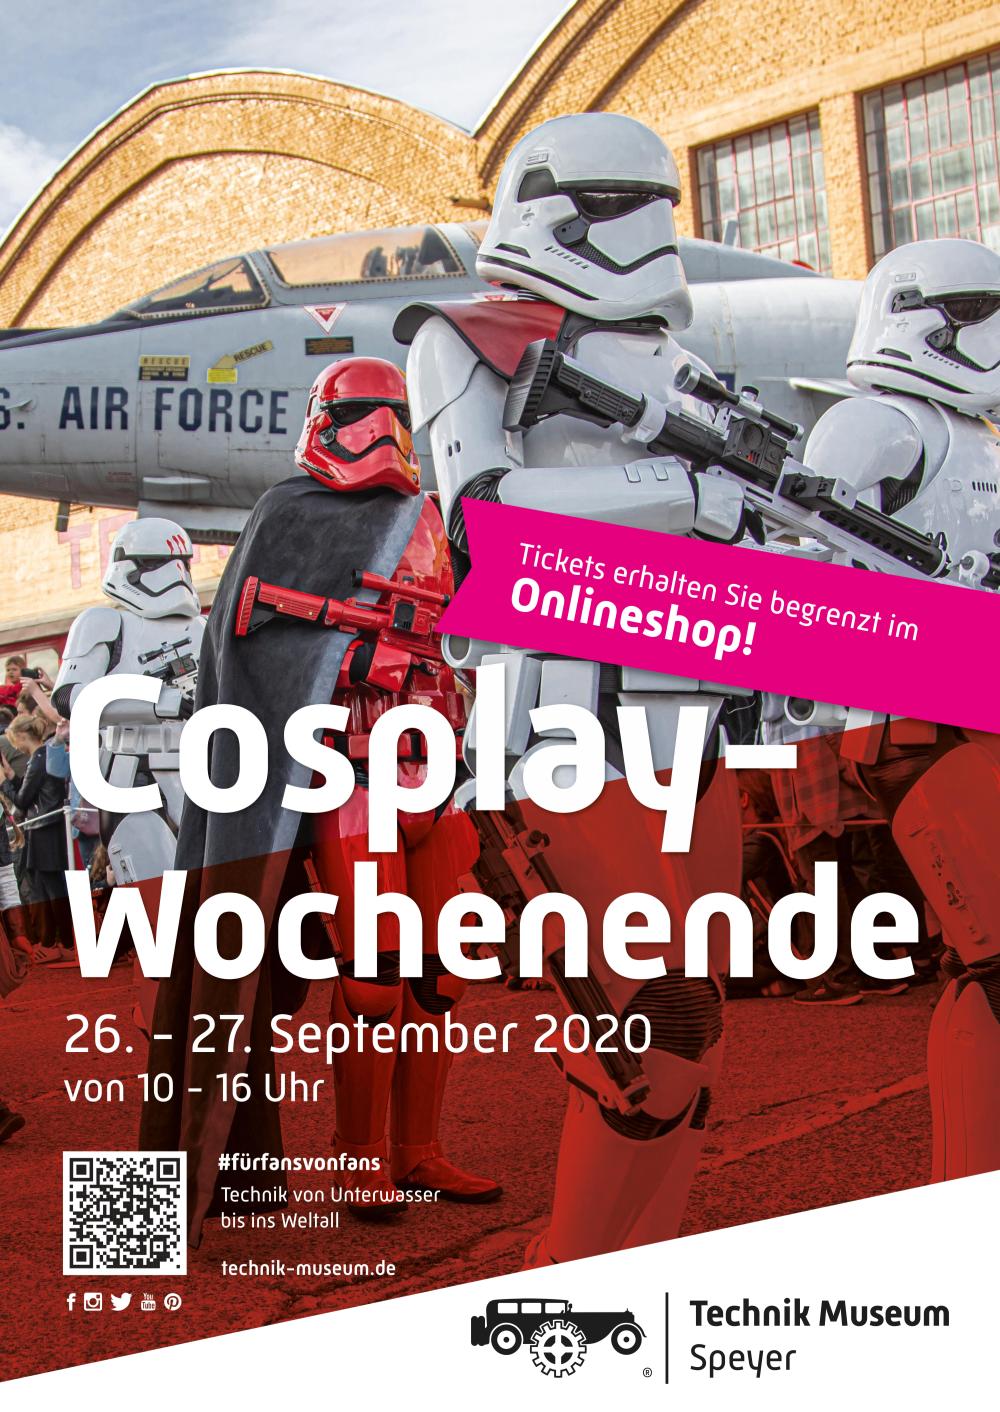 Technik Museum Speyer 2020 – Cosplay Wochenende